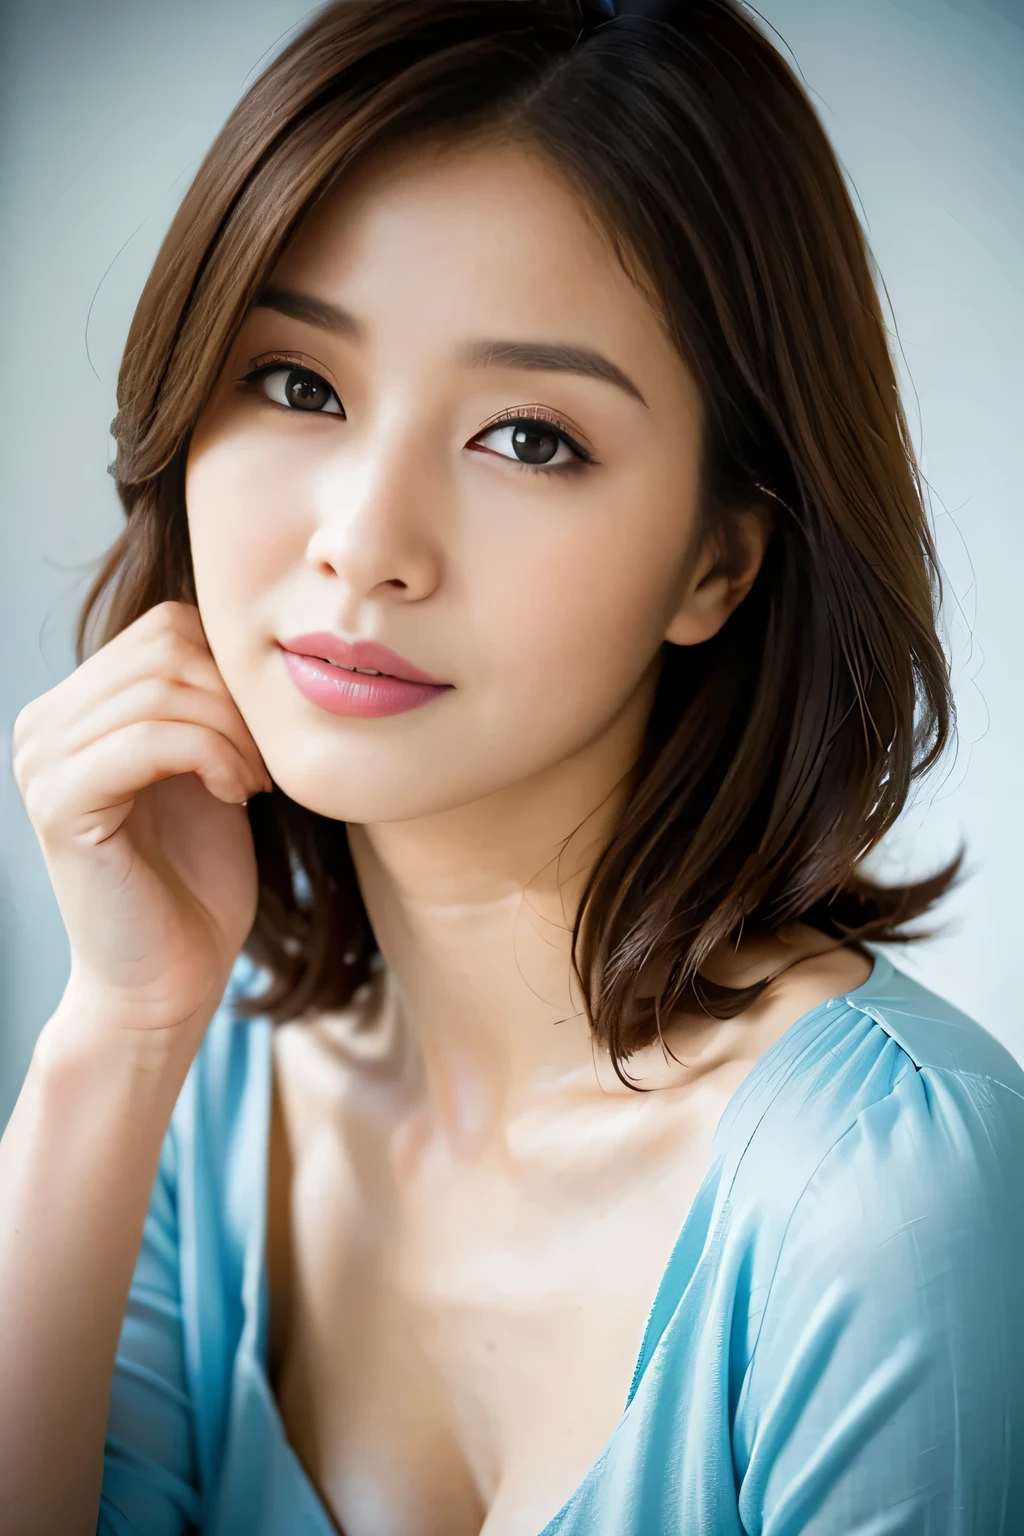 (最好的品質,8K,傑作),解剖學正確,
一位身穿藍色連身裙、手放在臉上的女人的特寫, 美麗的韓國女人, 美麗的年輕日本模特,華麗的年輕日本女人, 可愛的女孩 - 精心打扮的臉, 美麗的肖像圖像, 60毫米肖像, 高品質肖像, 70毫米肖像, 漂亮精緻的臉, 女性美麗的臉, 美麗的女人,
大乳房,
